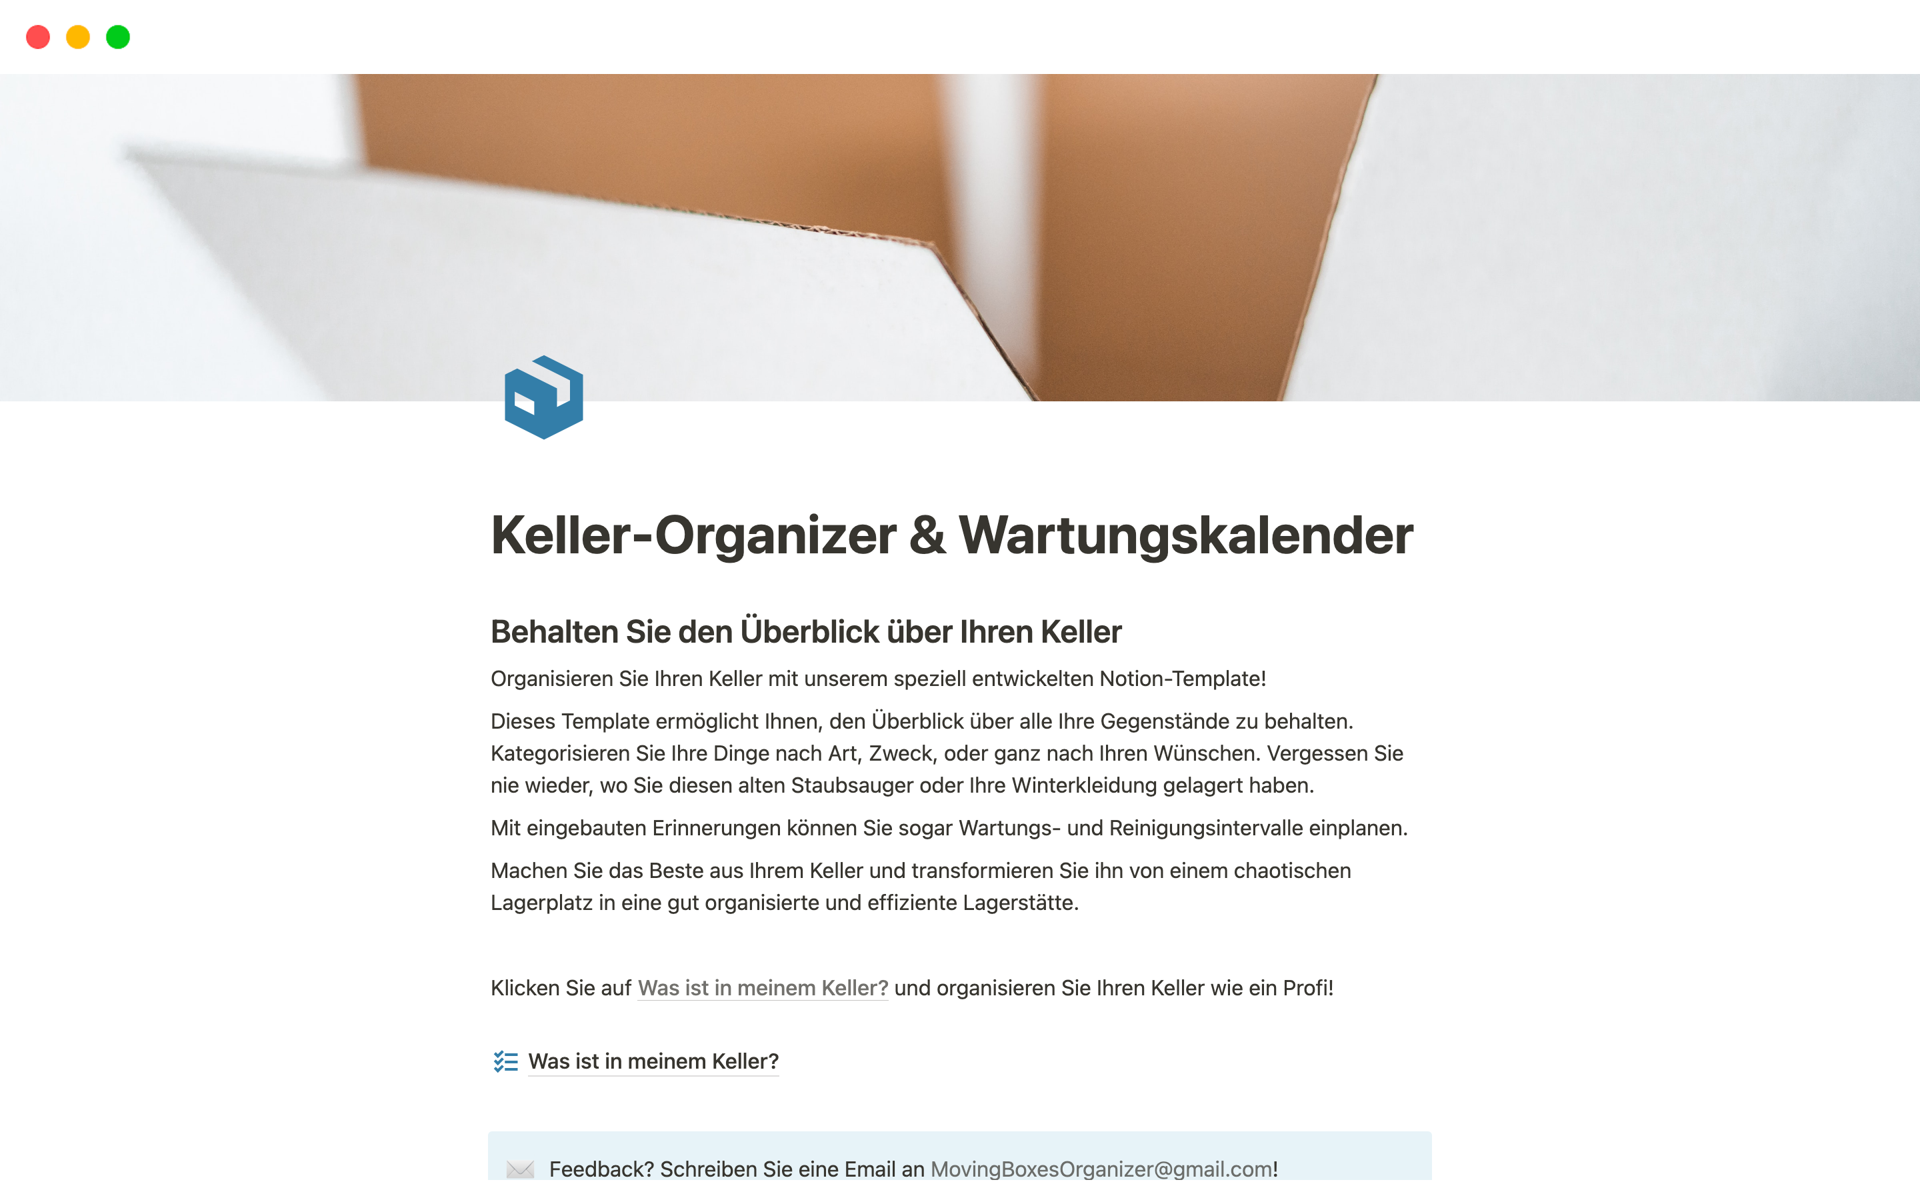 En förhandsgranskning av mallen för Keller-Organizer & Wartungskalender